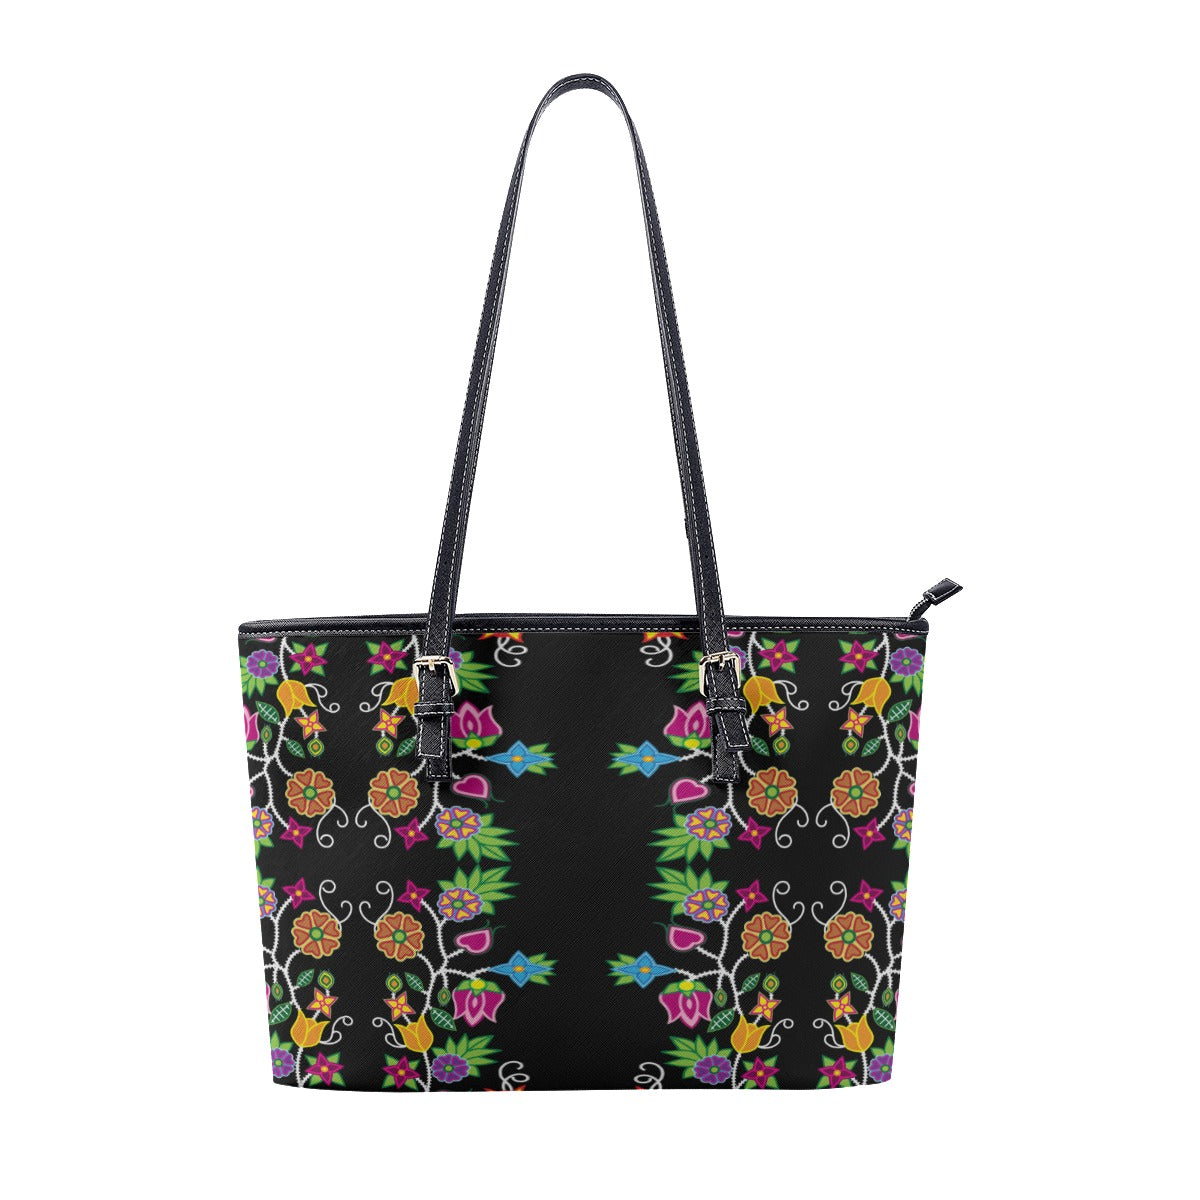 Floral Beadwork Tote Handbag